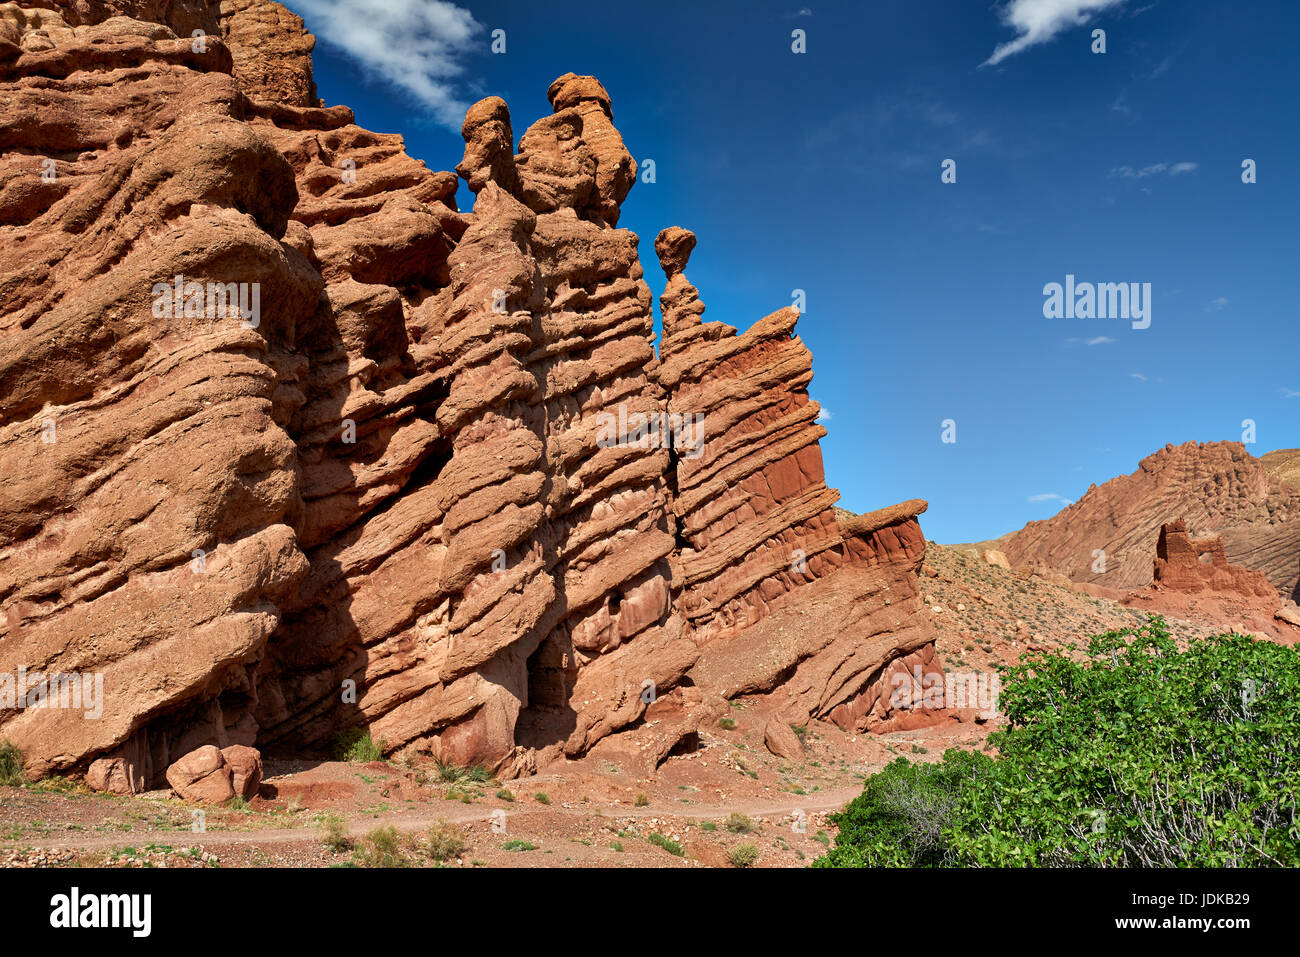 Affe Finger, spektakulären roten Kalkstein Felsformation, Landschaft in der Nähe von Ait Ouglif und Gorges de Dades, Marokko, Afrika Stockfoto